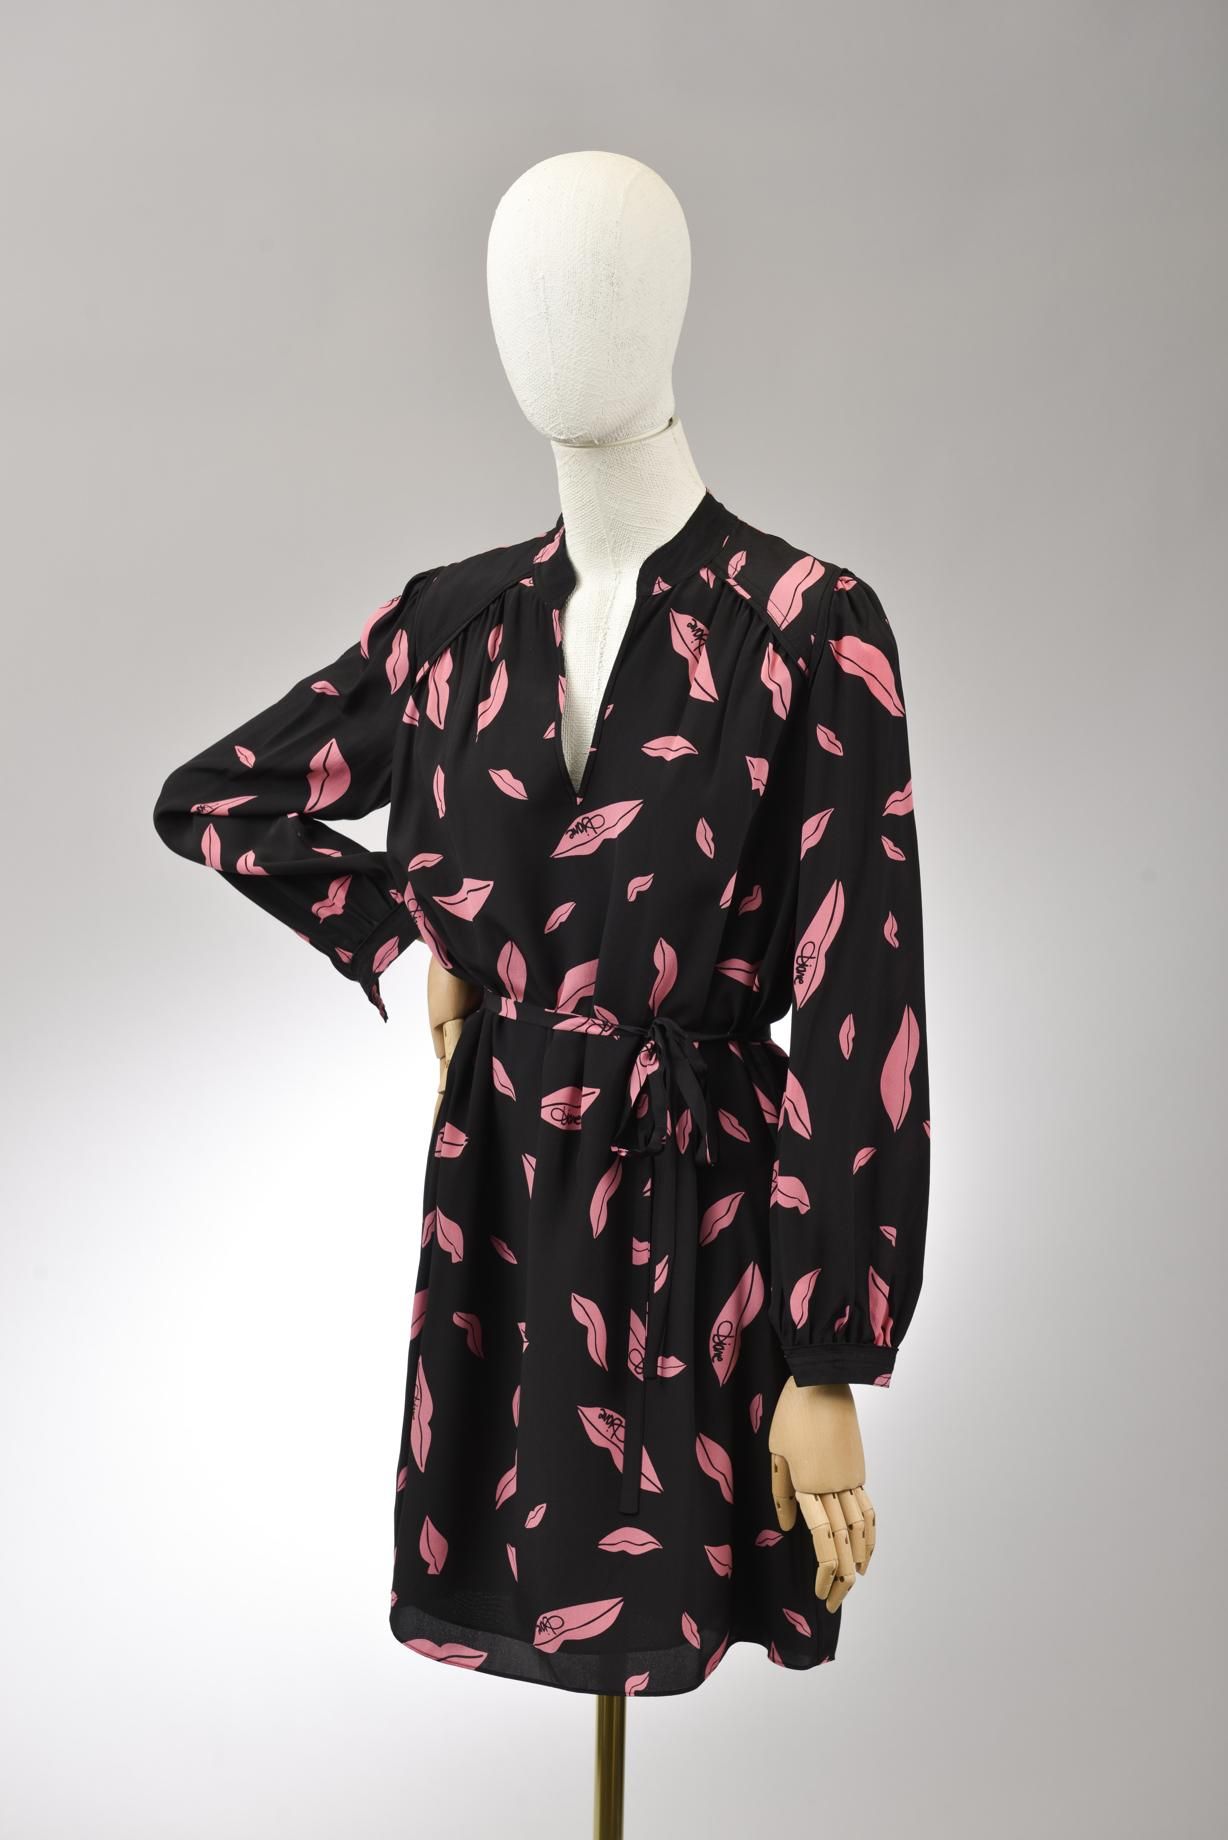 Null *尺寸XS DVF - Diane Von Fürstenberg

套装包括。

-丝质连衣裙，型号为 "DVF Glenda"，印有 "Falli&hellip;